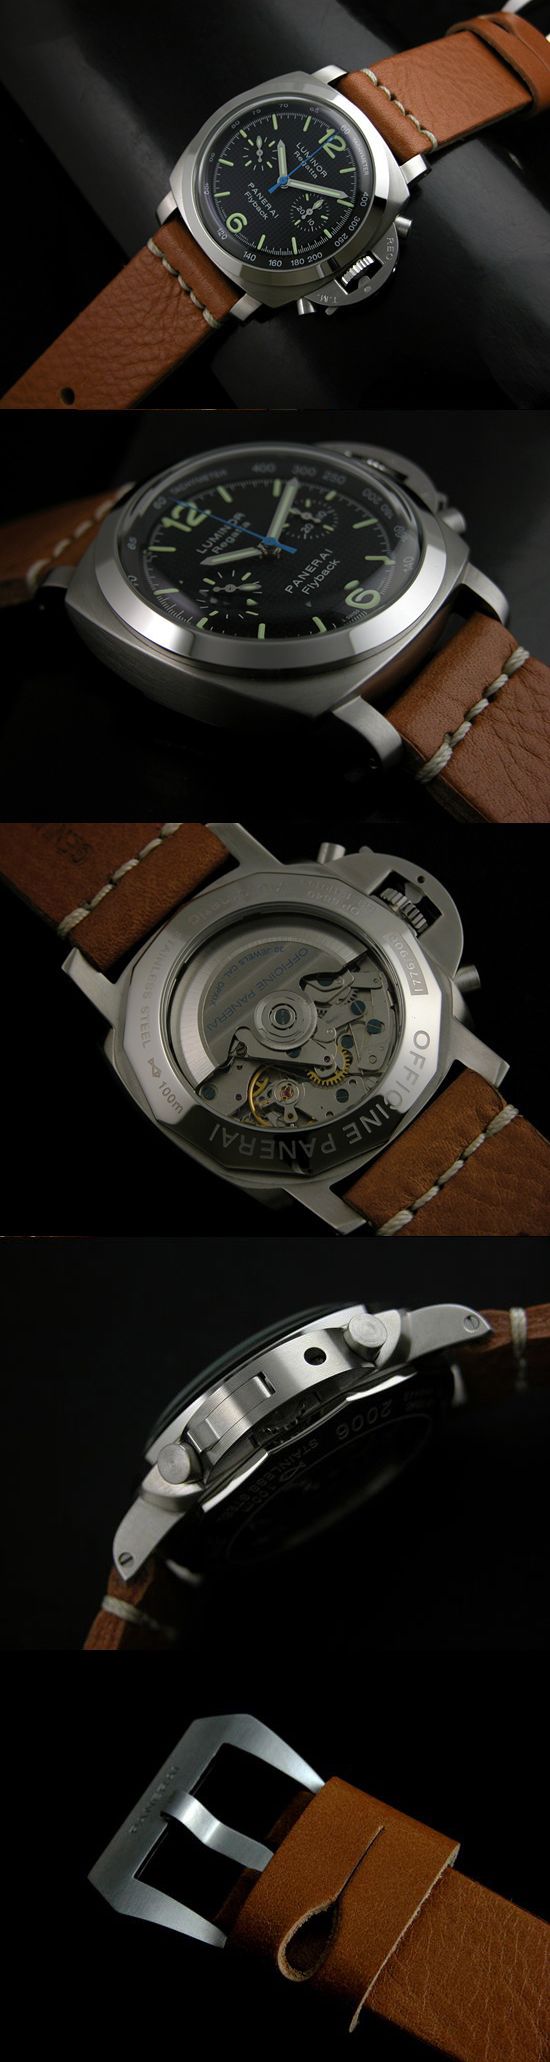 おしゃれなブランド時計がパネライ-ルミノール1950-PANERAI-PAM253-bf-男性用を提供します.